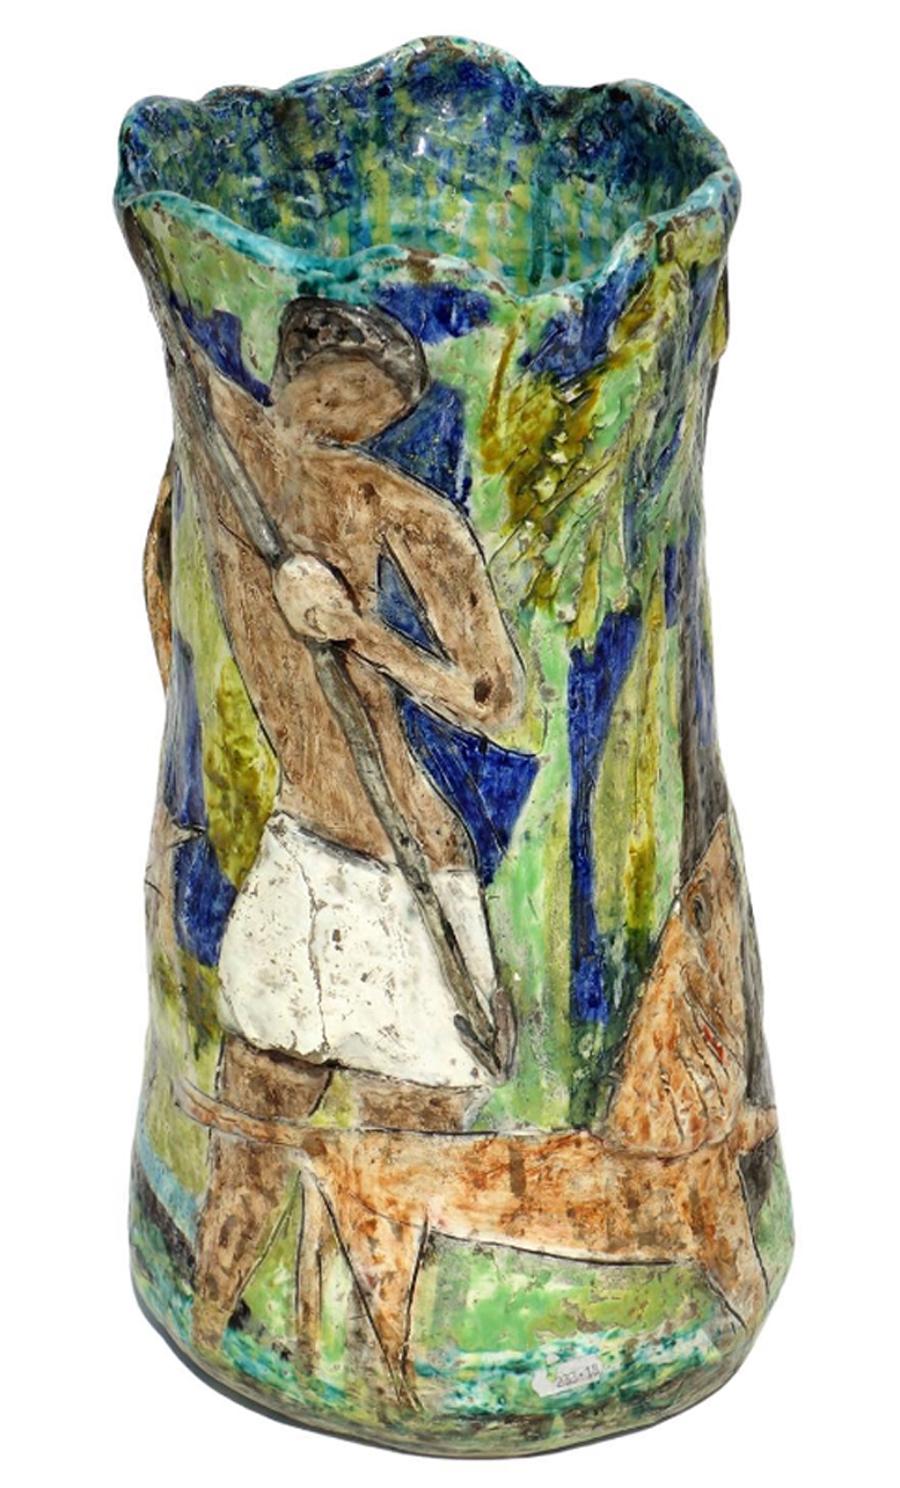  Keramische Vase mit farbiger Emaille
Primitive Szene in Relief
Italien, 1950er Jahre

Künstlerisches Sinedrio auf dem Sockel.
Original 1950er Jahre
Ausgezeichneter Zustand, keine Wiederherstellung.
